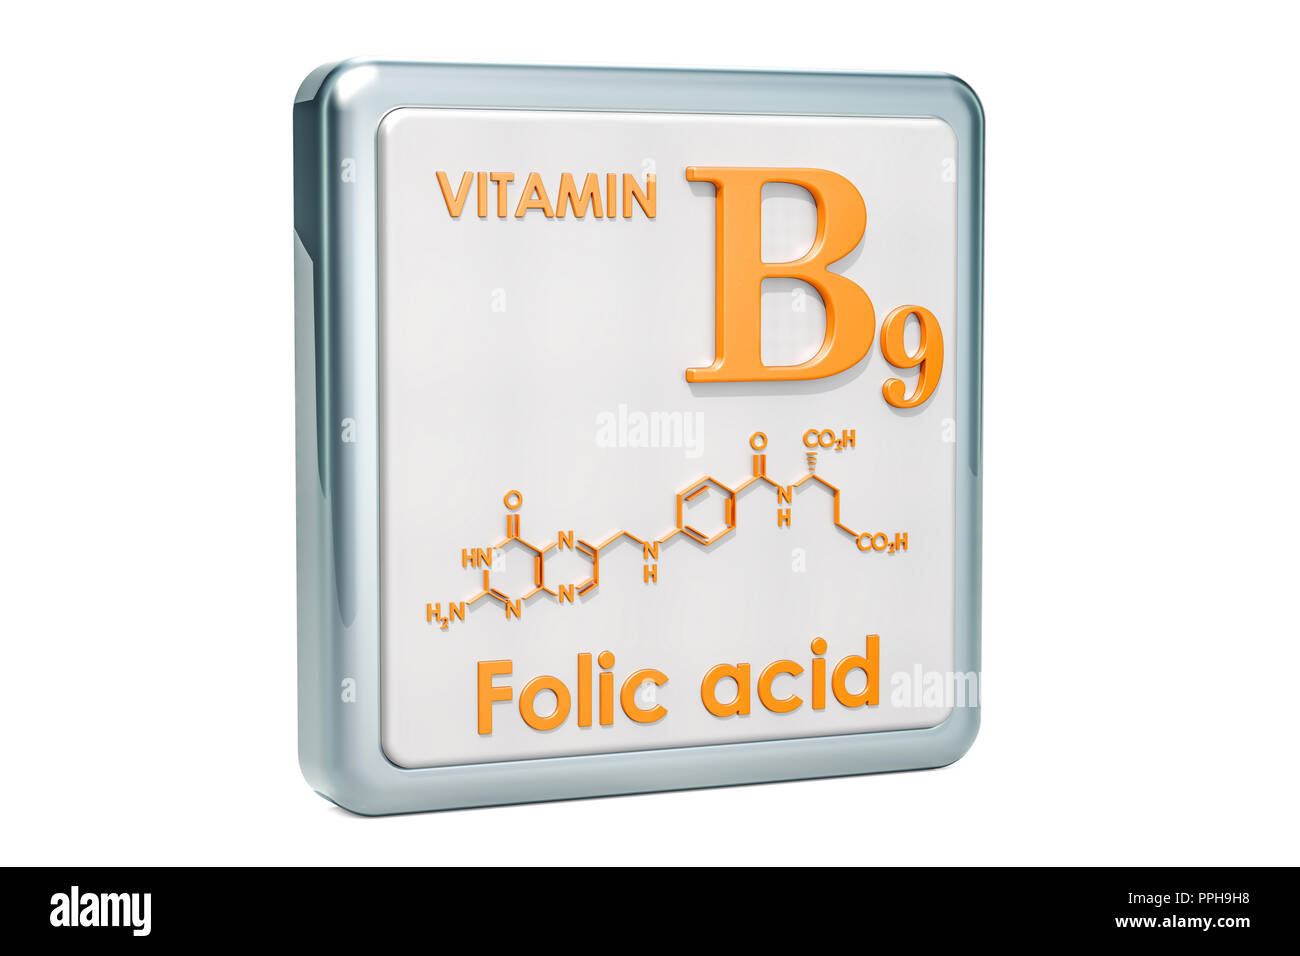 Фолиевая кислота b9. Витамин в9 химическая формула. Витамин фолиевая кислота формула. Витамин б9 формула. Витамин b9.